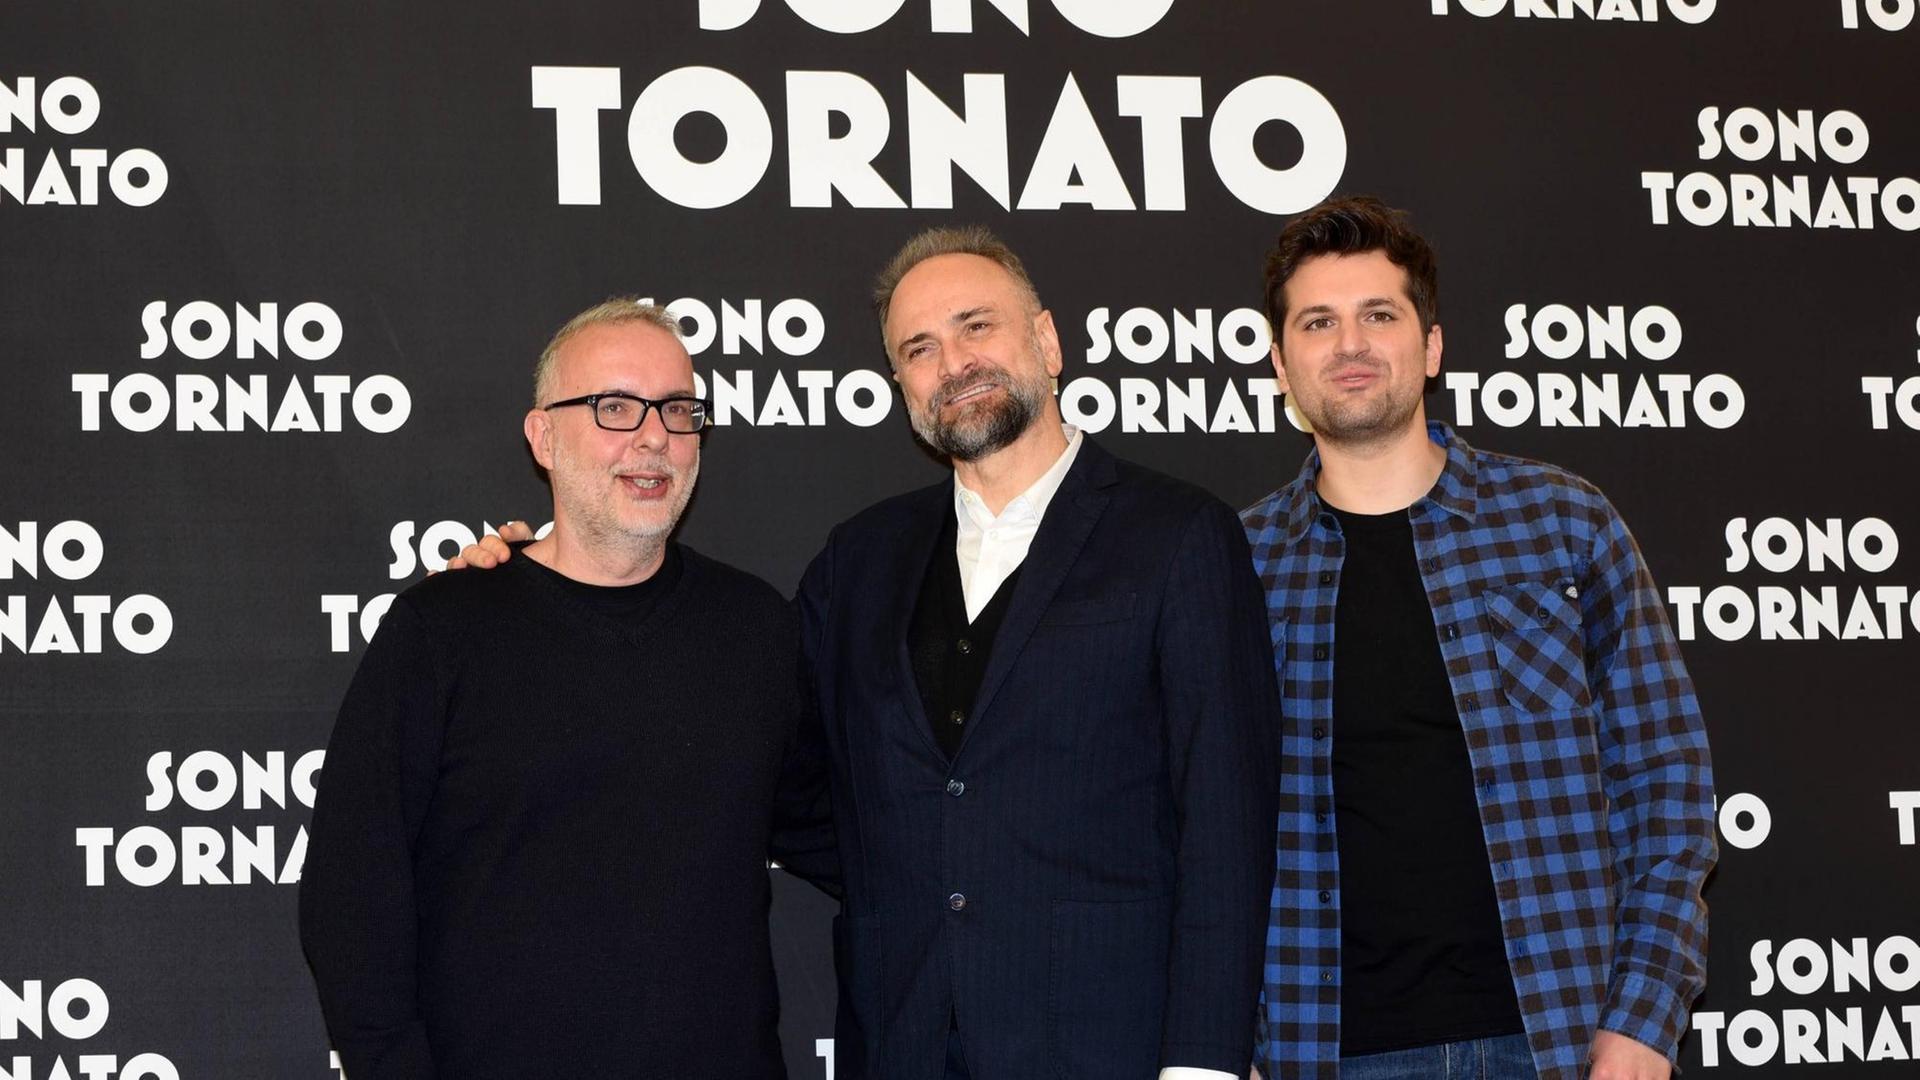 Bei der Präsentation des Filims "Sono tornato" in Rom: Regisseur Luca Miniero mit den Darstellern Massimo Popolizio und Frank Matano.